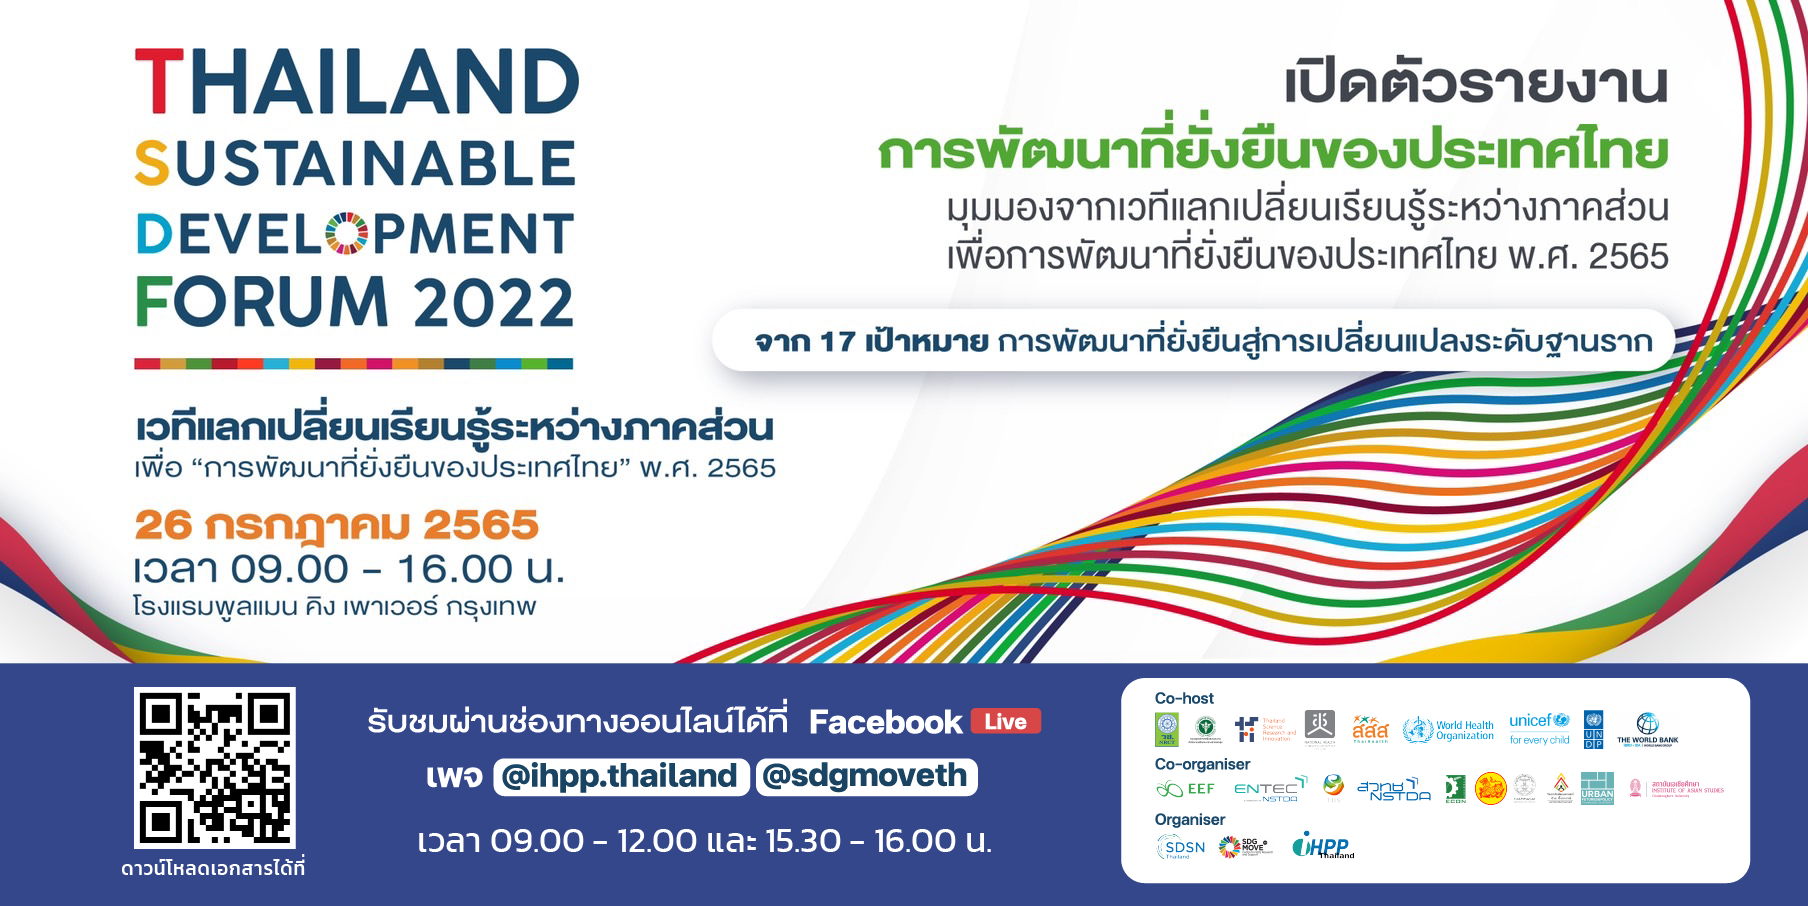 SDSN Thailand โดย IHPP และ SDG Move ร่วมจัดเวทีแลกเปลี่ยนเรียนรู้ระหว่างภาคส่วนเพื่อการพัฒนาที่ยั่งยืนของประเทศไทย พ.ศ. 2565 พร้อมเปิดตัว “รายงานการพัฒนาที่ยั่งยืนของประเทศไทย พ.ศ. 2565 มุมมองจากเวทีแลกเปลี่ยนเรียนรู้ระหว่างภาคส่วนเพื่อการพัฒนาที่ยั่งยืนของประเทศไทย”